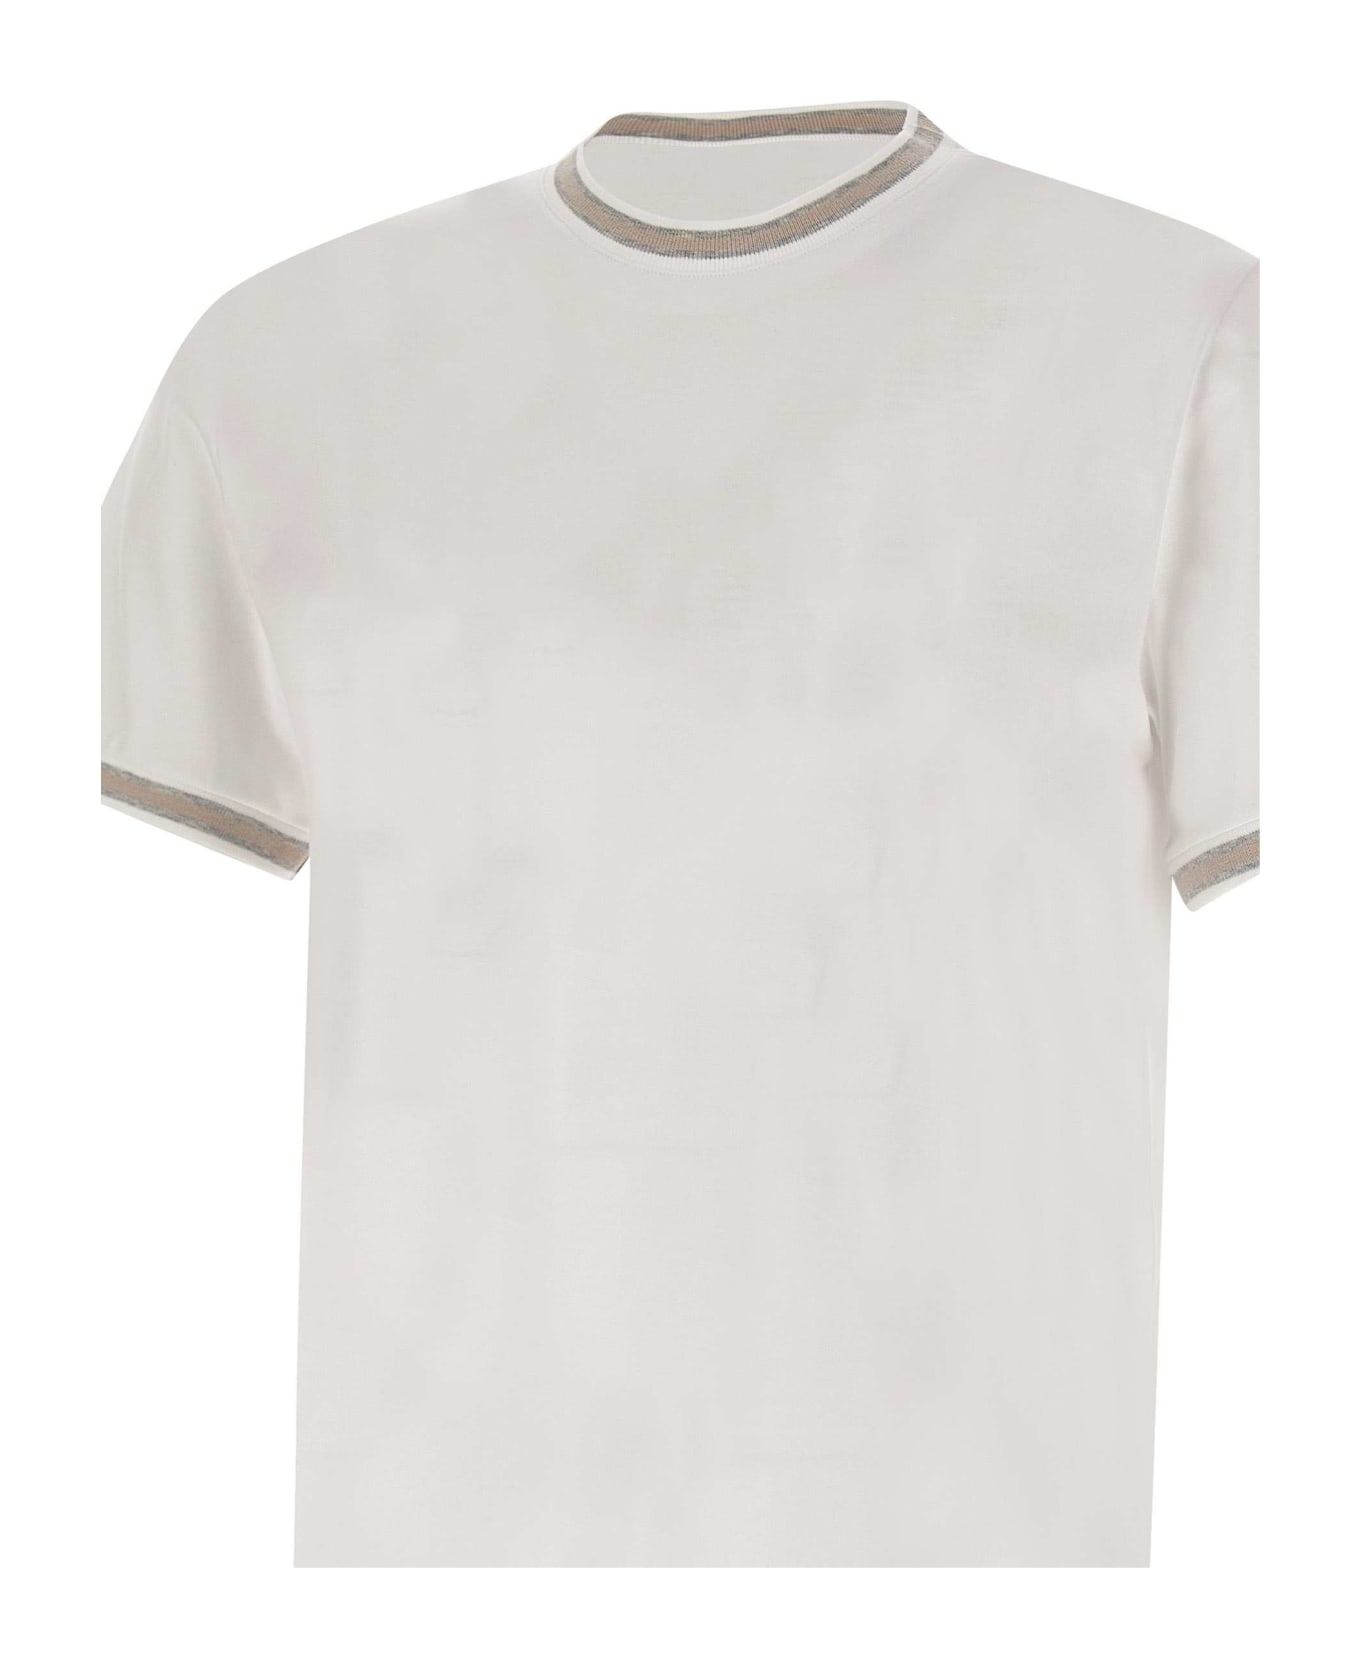 Eleventy Cotton T-shirt - White シャツ